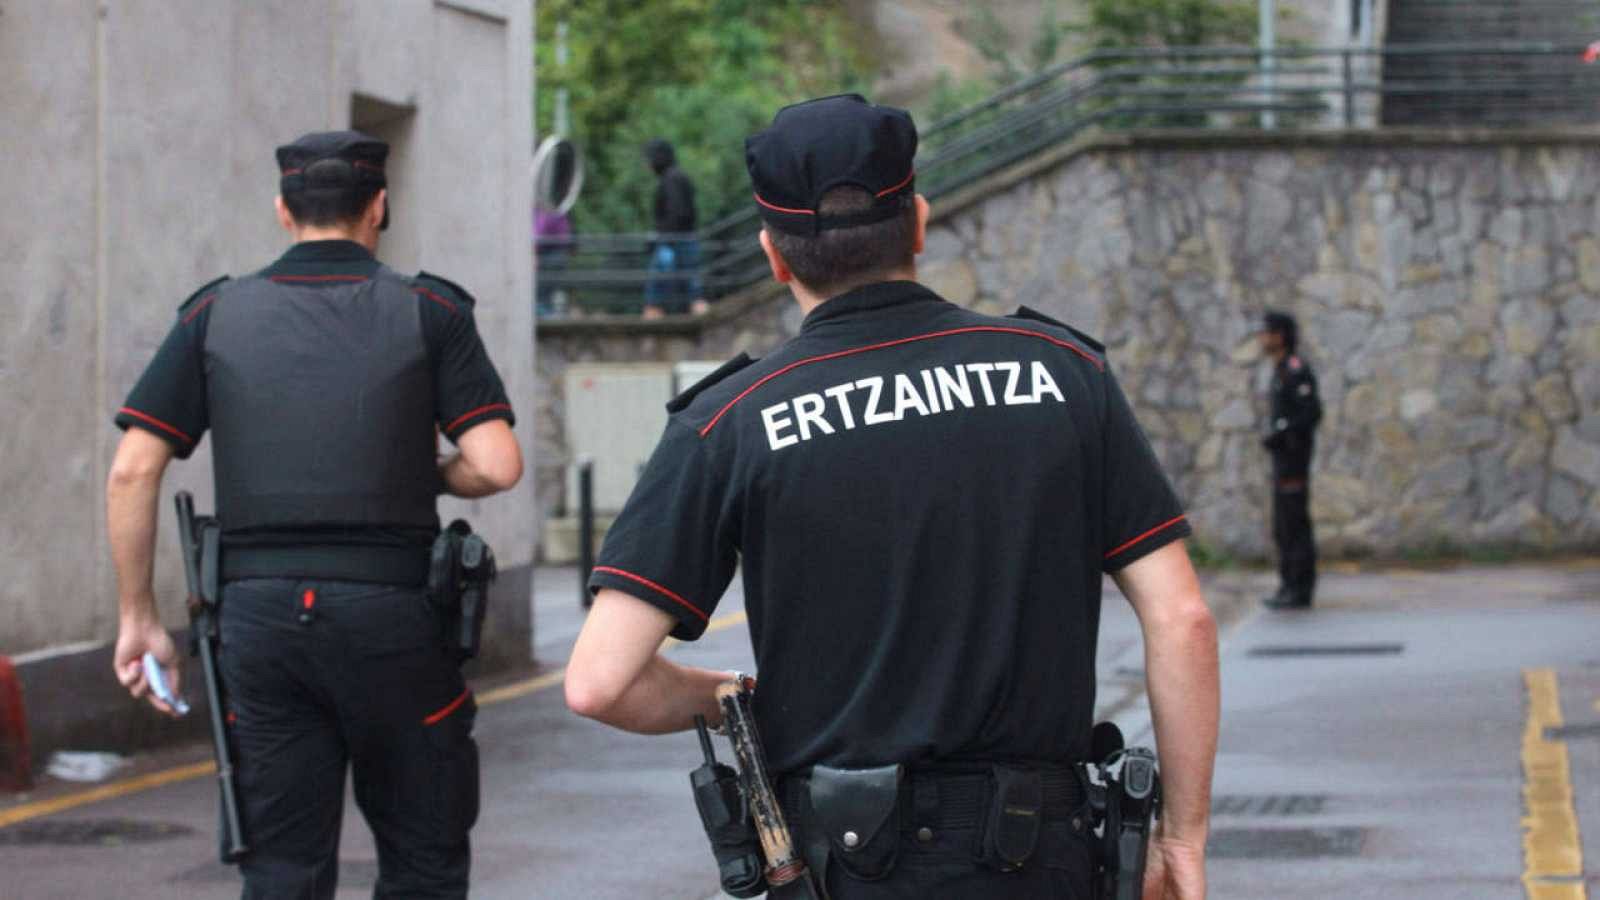 Buscan al sospechoso del asesinato de varios hombres en Bilbao